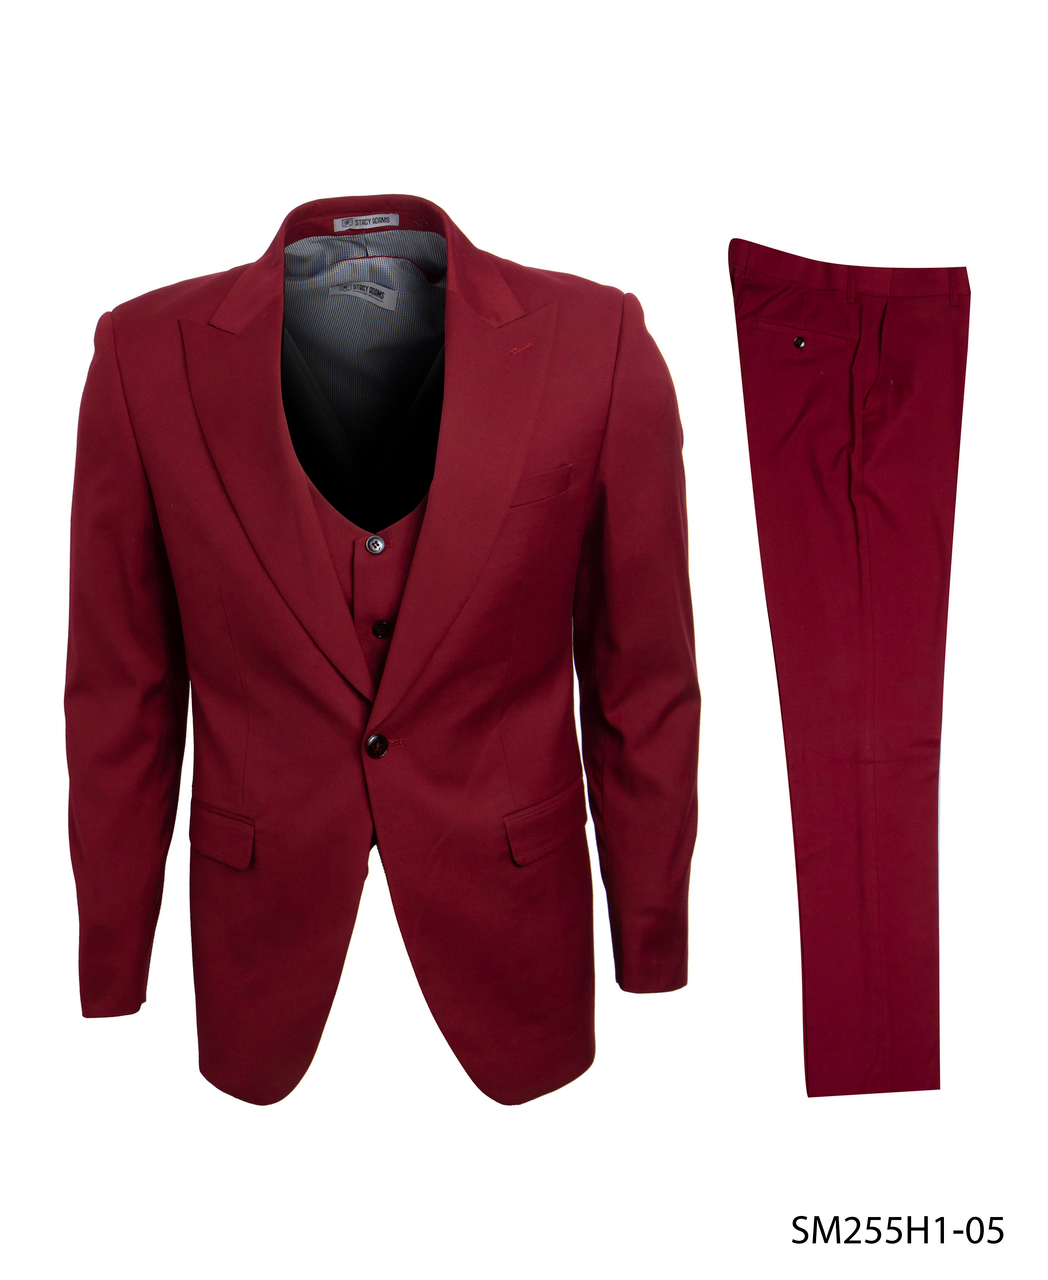 Stacy Adams Fashion Suit 3 Piece Dark Red Peak Lapel Low Cut Vest SM255H